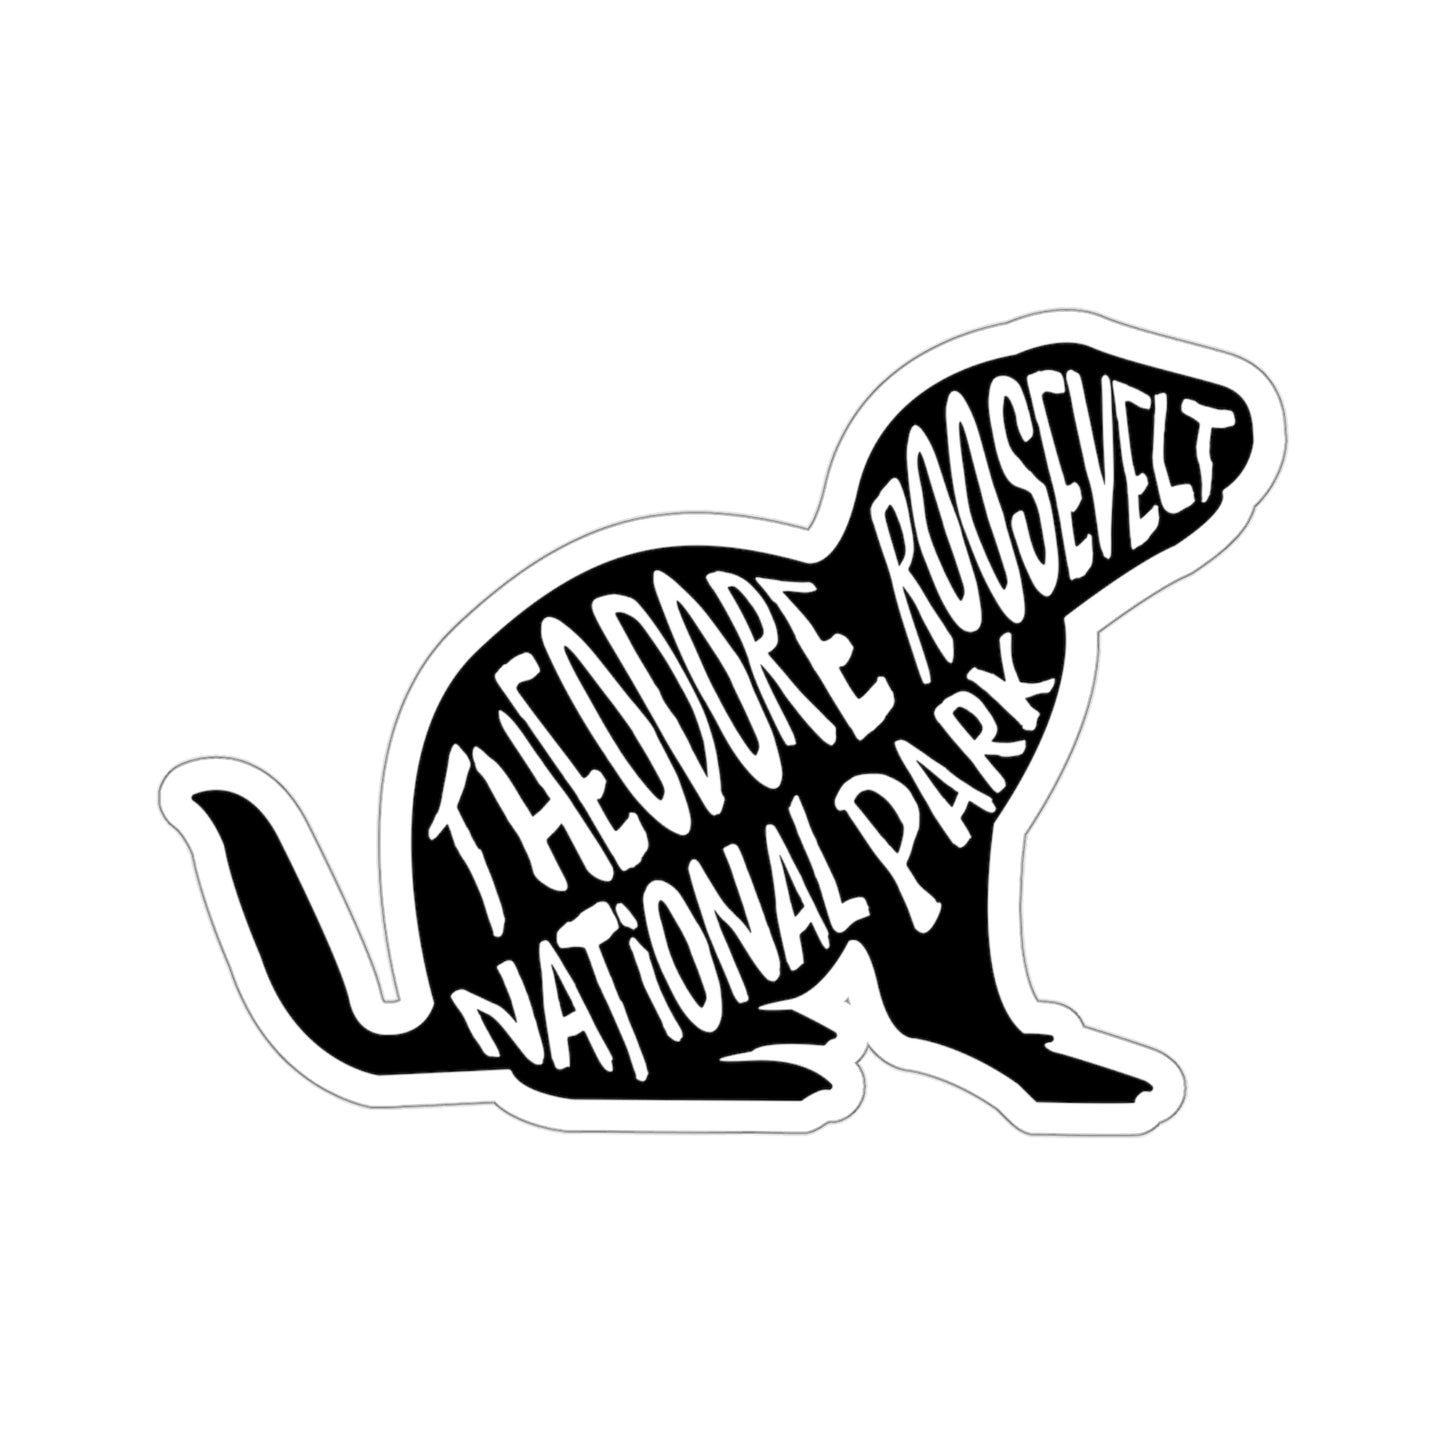 Theodore Roosevelt National Park Sticker - Prairie Dog